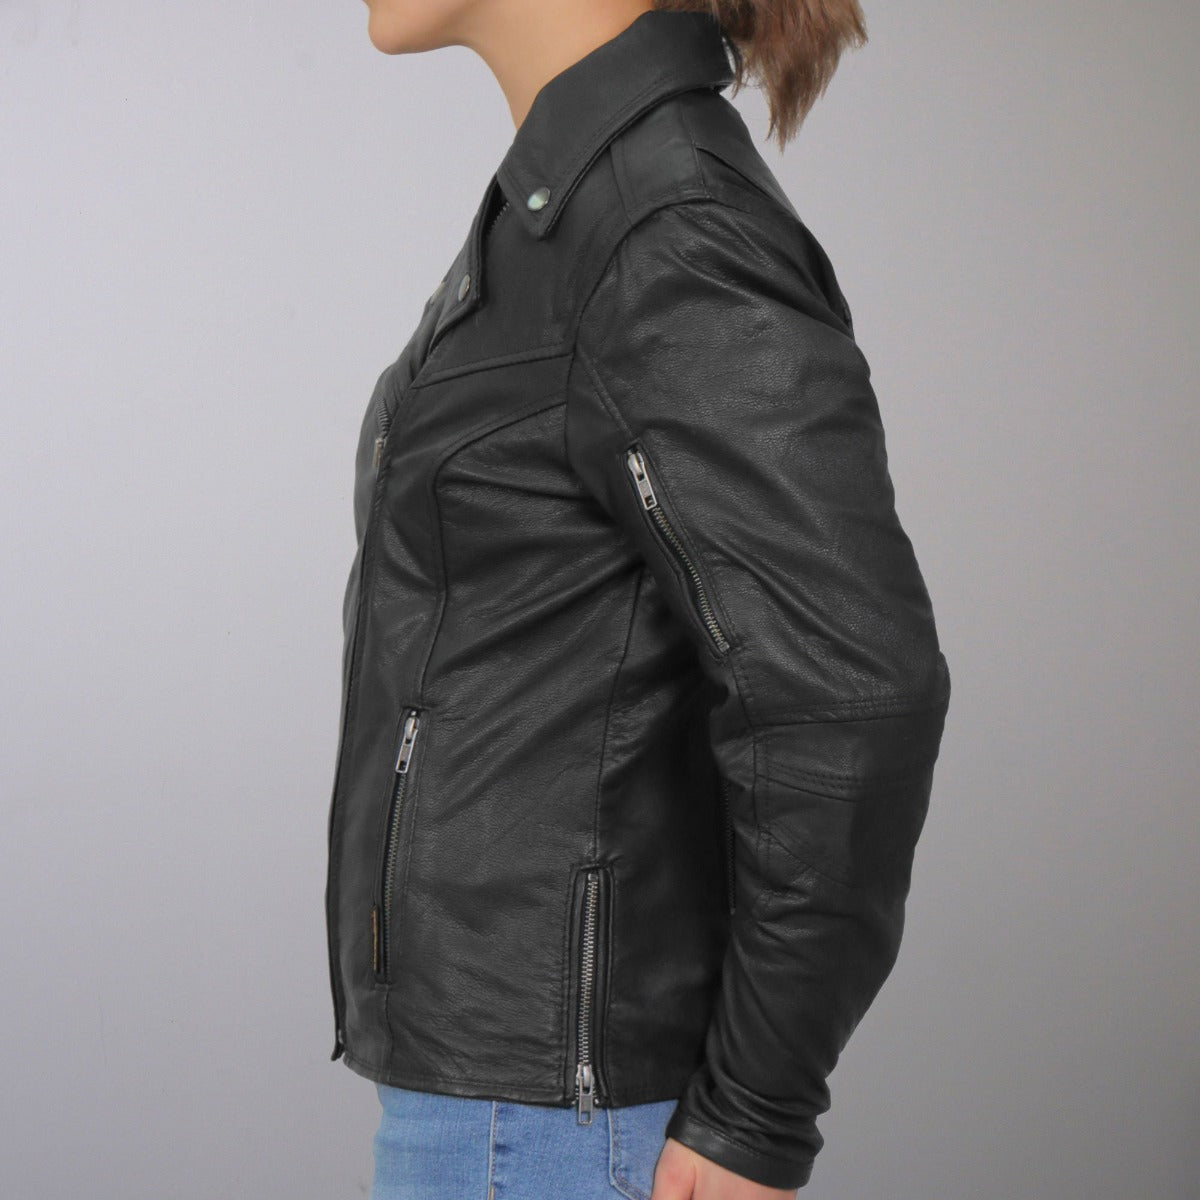 Hot Leathers Women's Lightweight Leather Biker Jacket